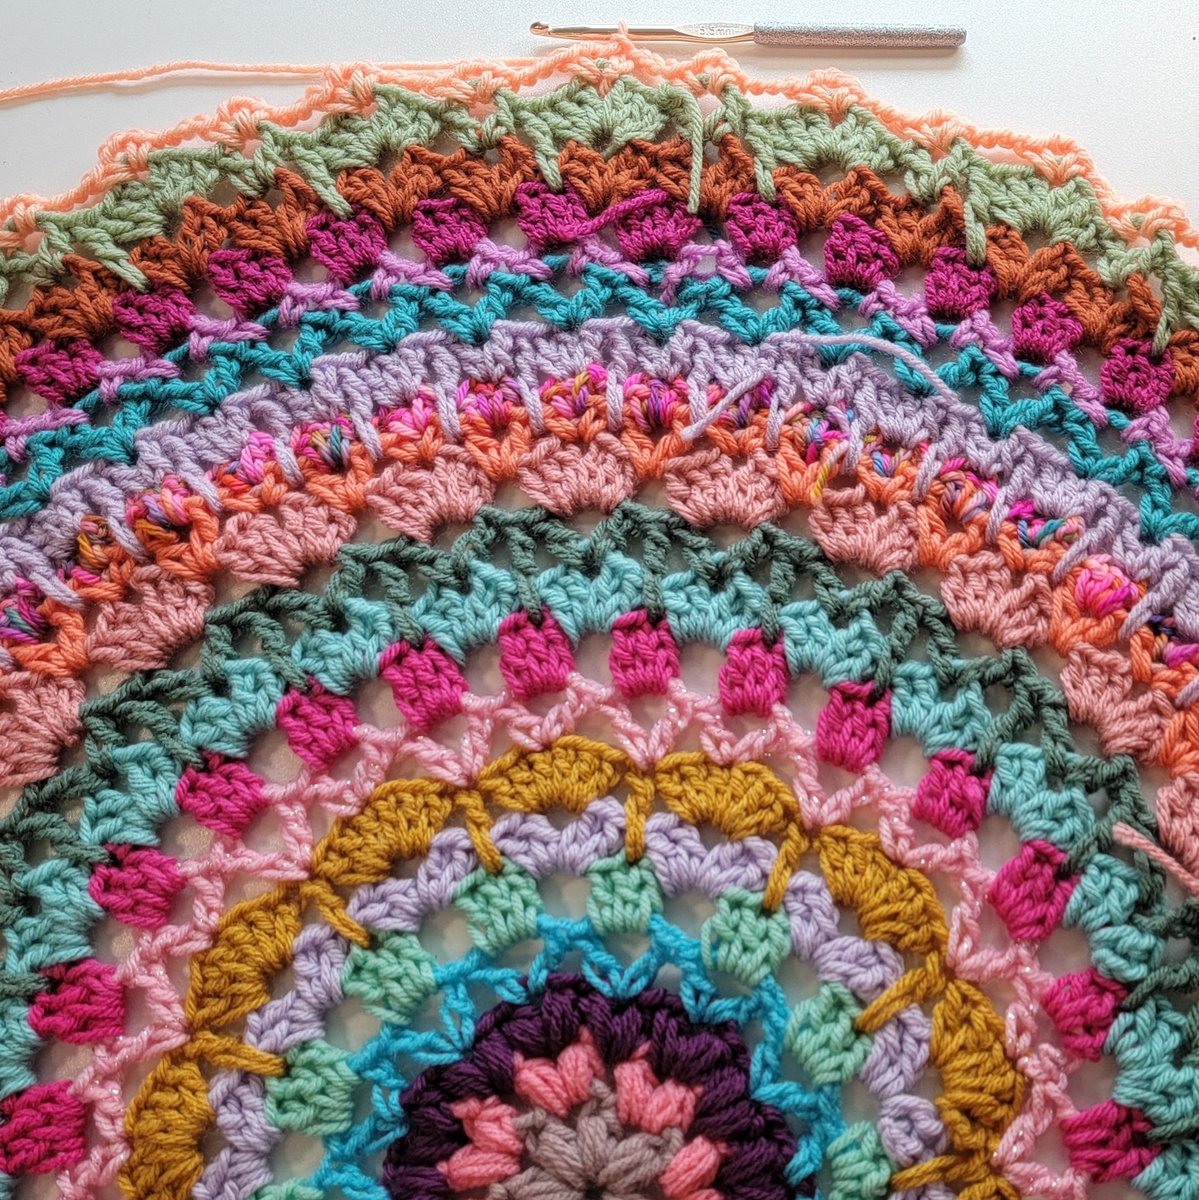 2024 Crochet Mood Blanket! Week 21, Row 21! Another good, fun week! 😃👏😊 #yarn #artist #crocheters #crochet #crocheting #crocheted #crochetersofinstagram #fyptiktok #makers #crochetblanket #crochetcreations #instacrochet #moodblanket #crochetallthethings #crochet365 #crafts